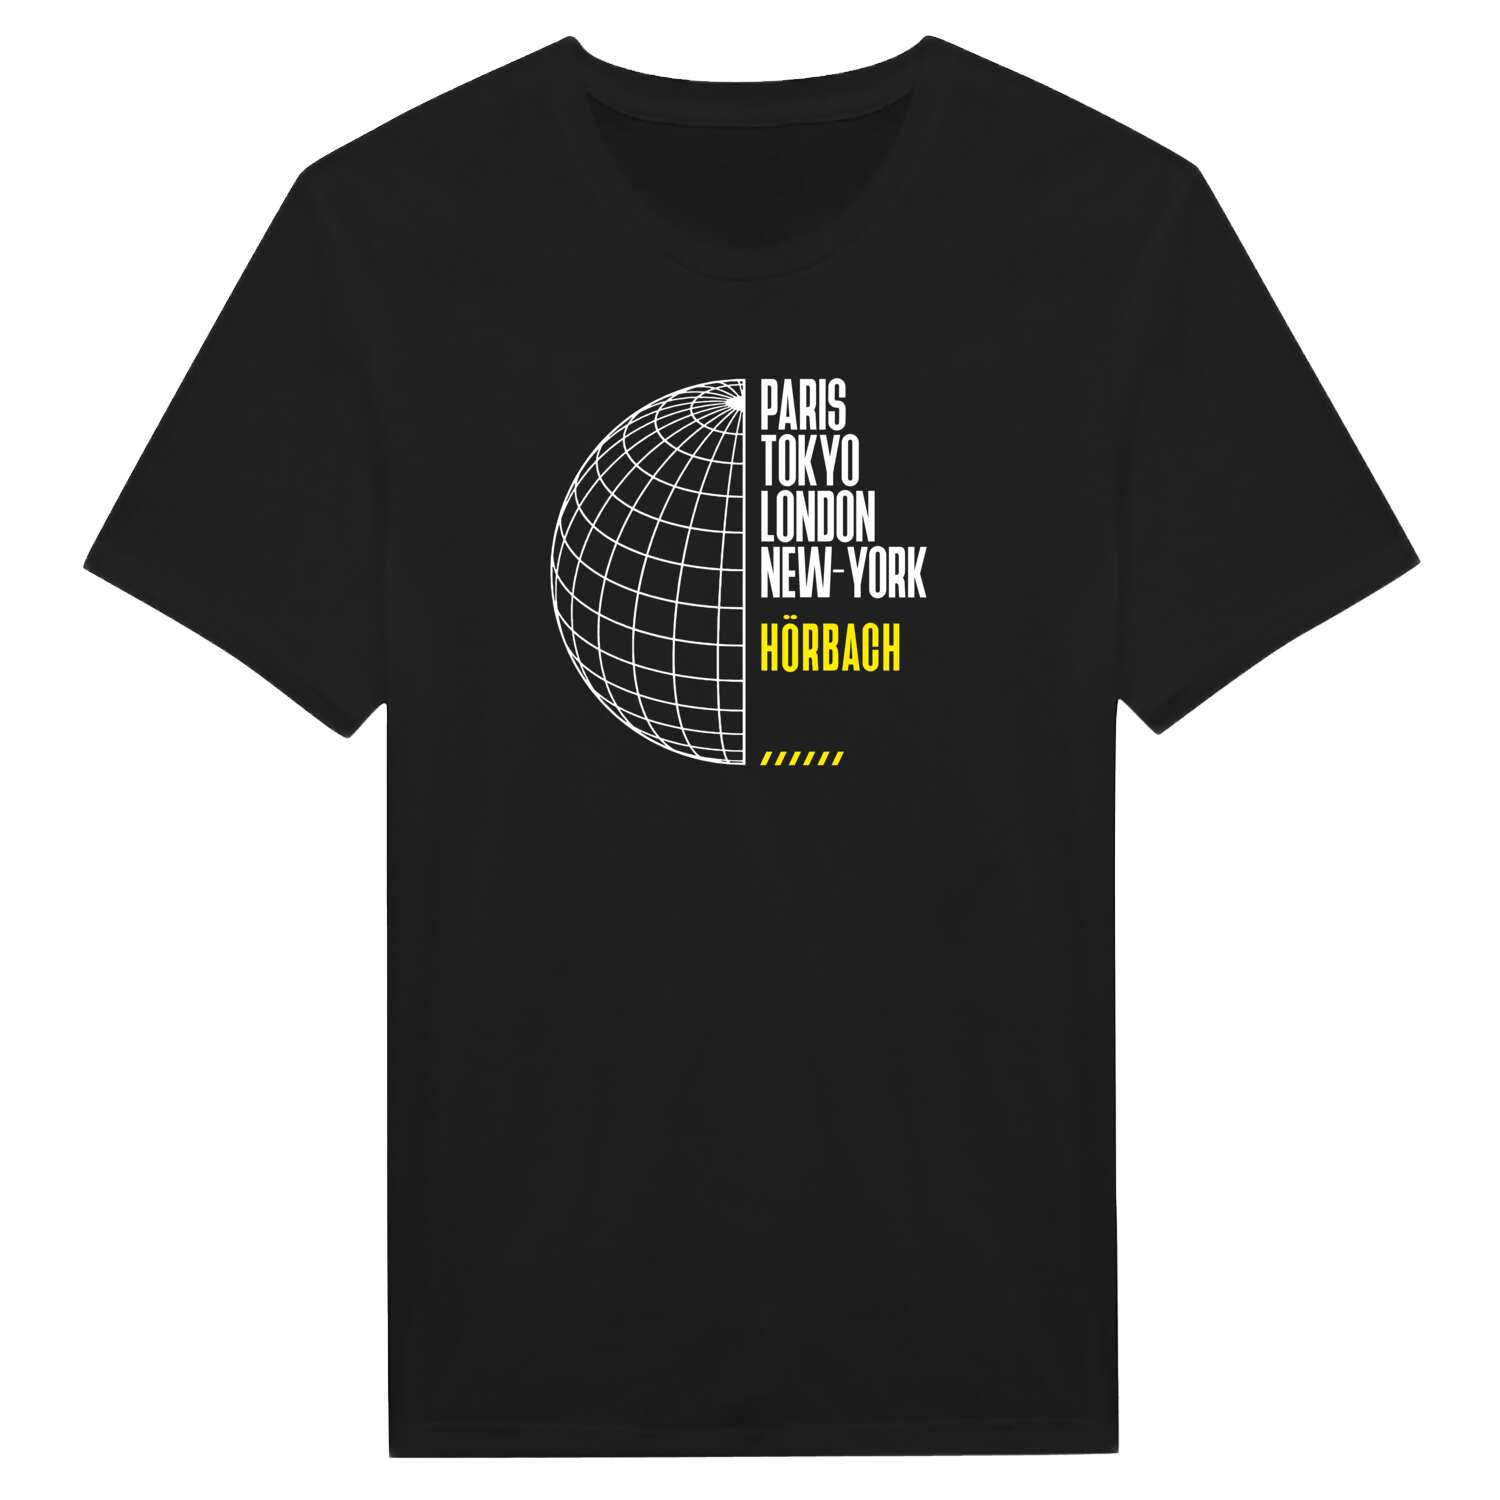 Hörbach T-Shirt »Paris Tokyo London«